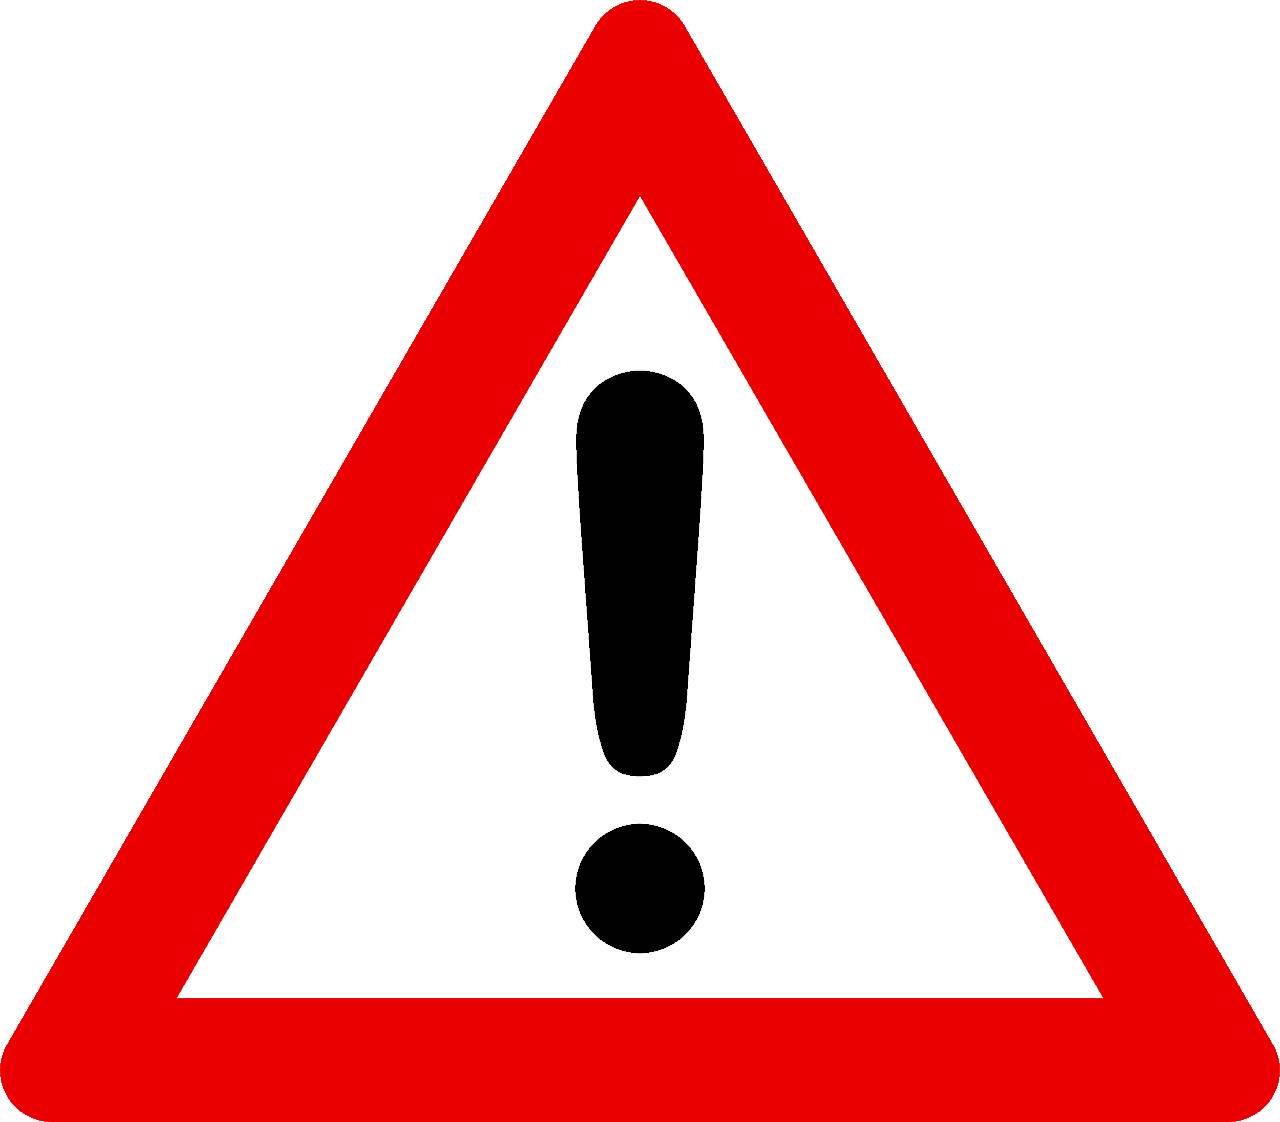 risco, sinal de trânsito: triangulo vermelho sobre um fundo branco e, dentro dele, sinal de exclamação preto